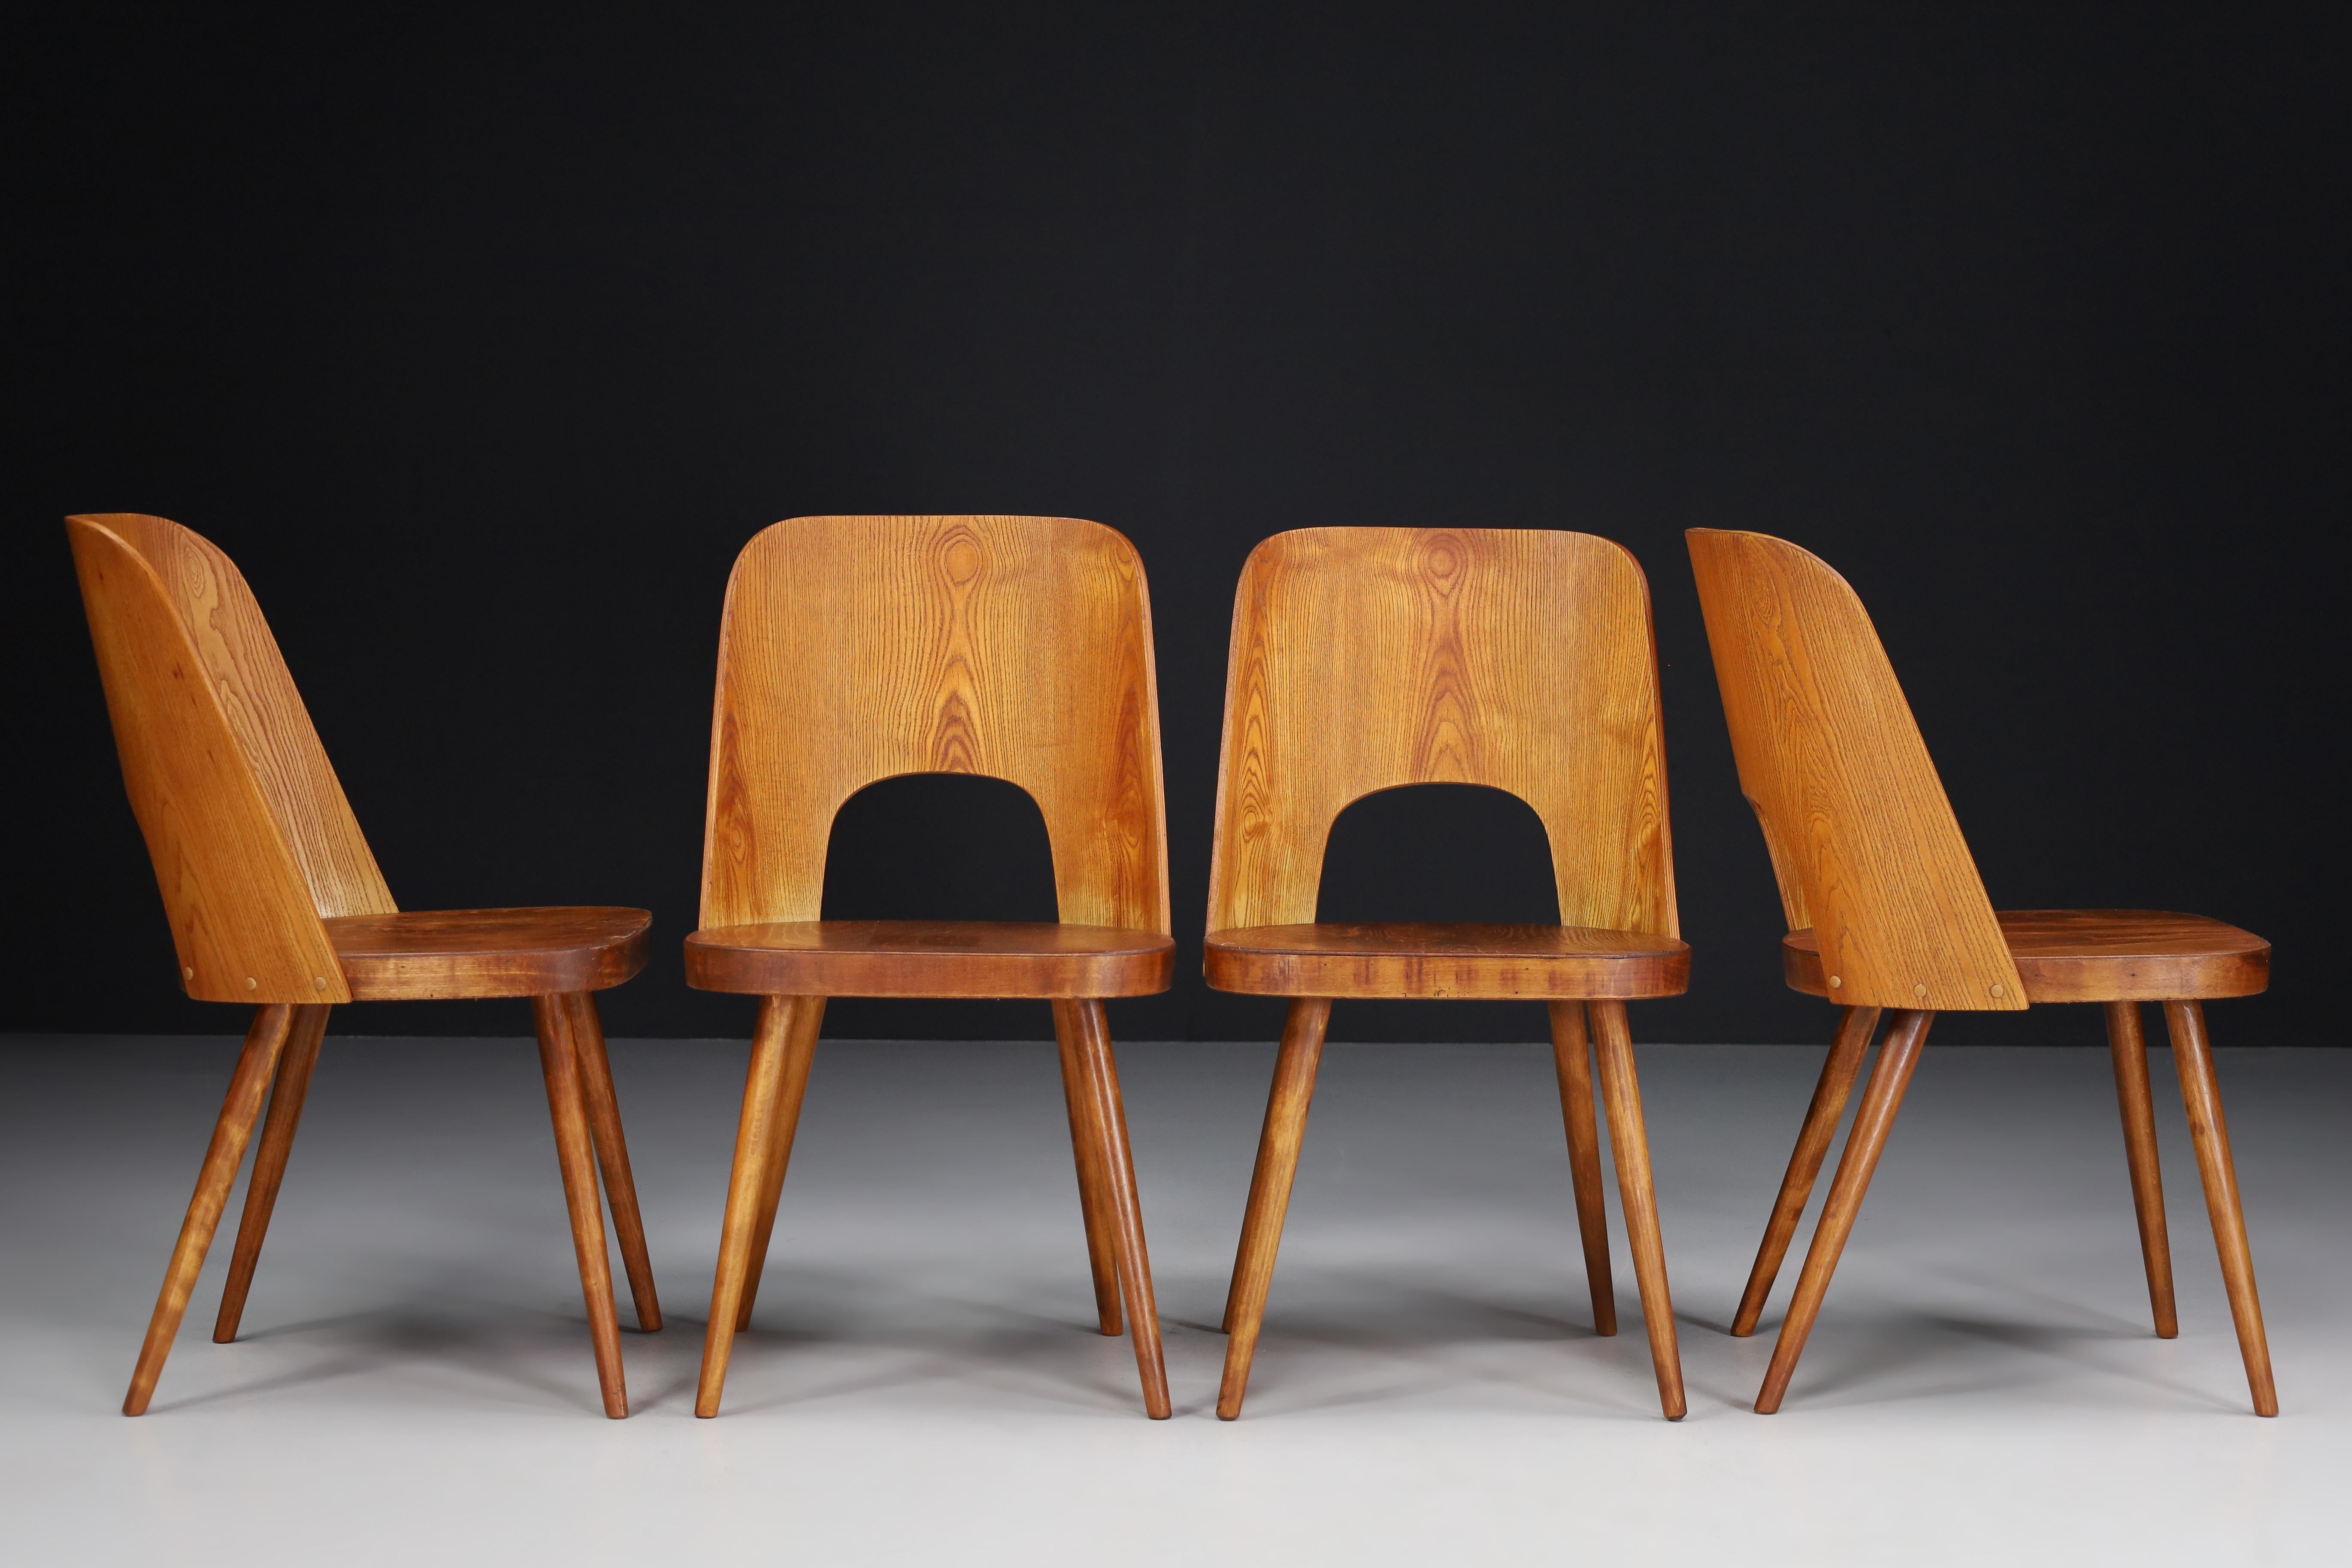 Oswald Haerdtl Satz von vier Stühlen, 1950er Jahre 

Ein seltenes Set von vier Stühlen wurde von dem österreichischen Designer Oswald Haerdtl entworfen und von Ton (Thonet) in der ehemaligen Tschechoslowakei in den 1950er Jahren hergestellt.